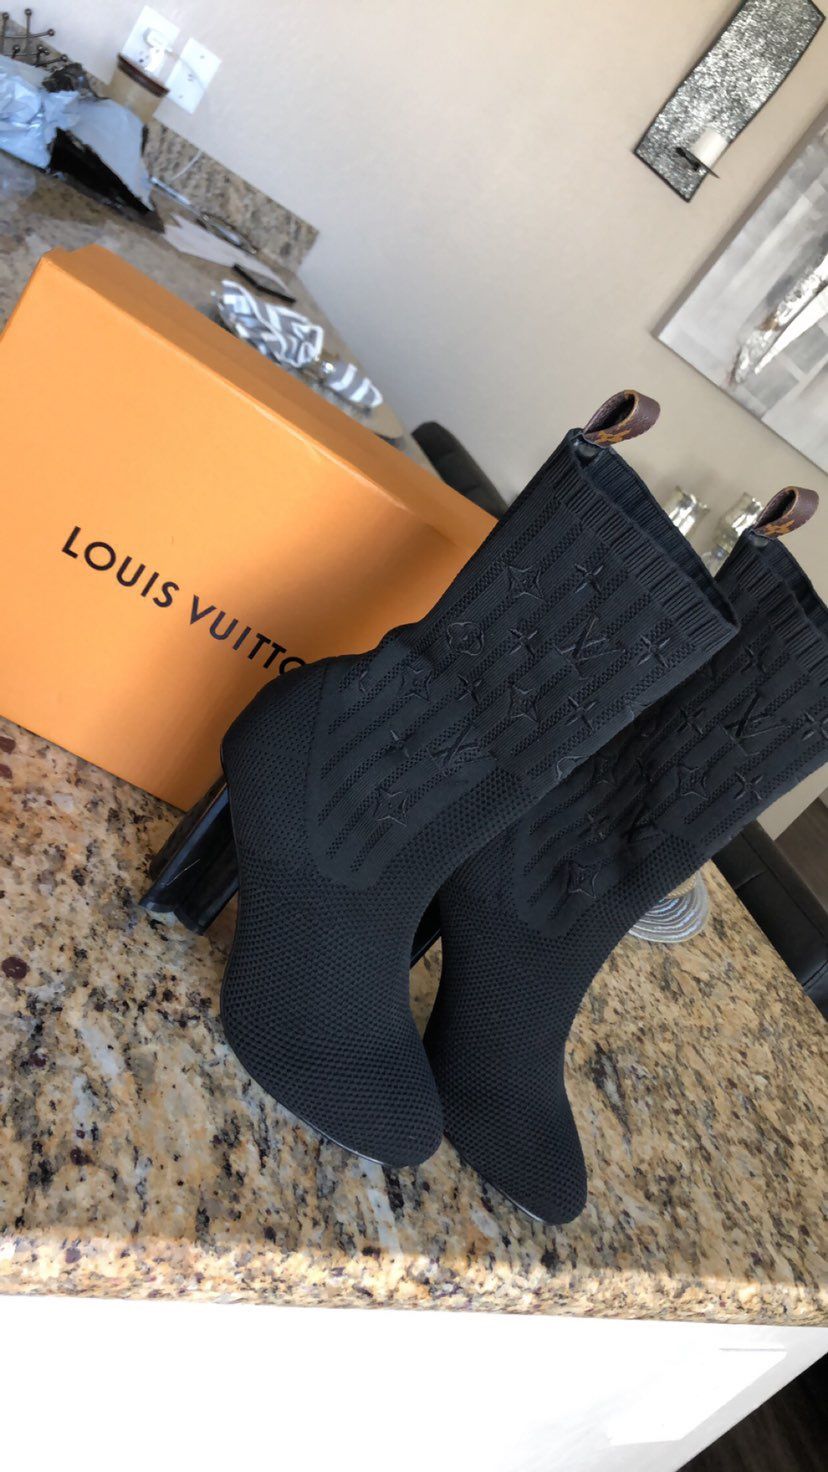 Louis Vuitton boots/ size 8